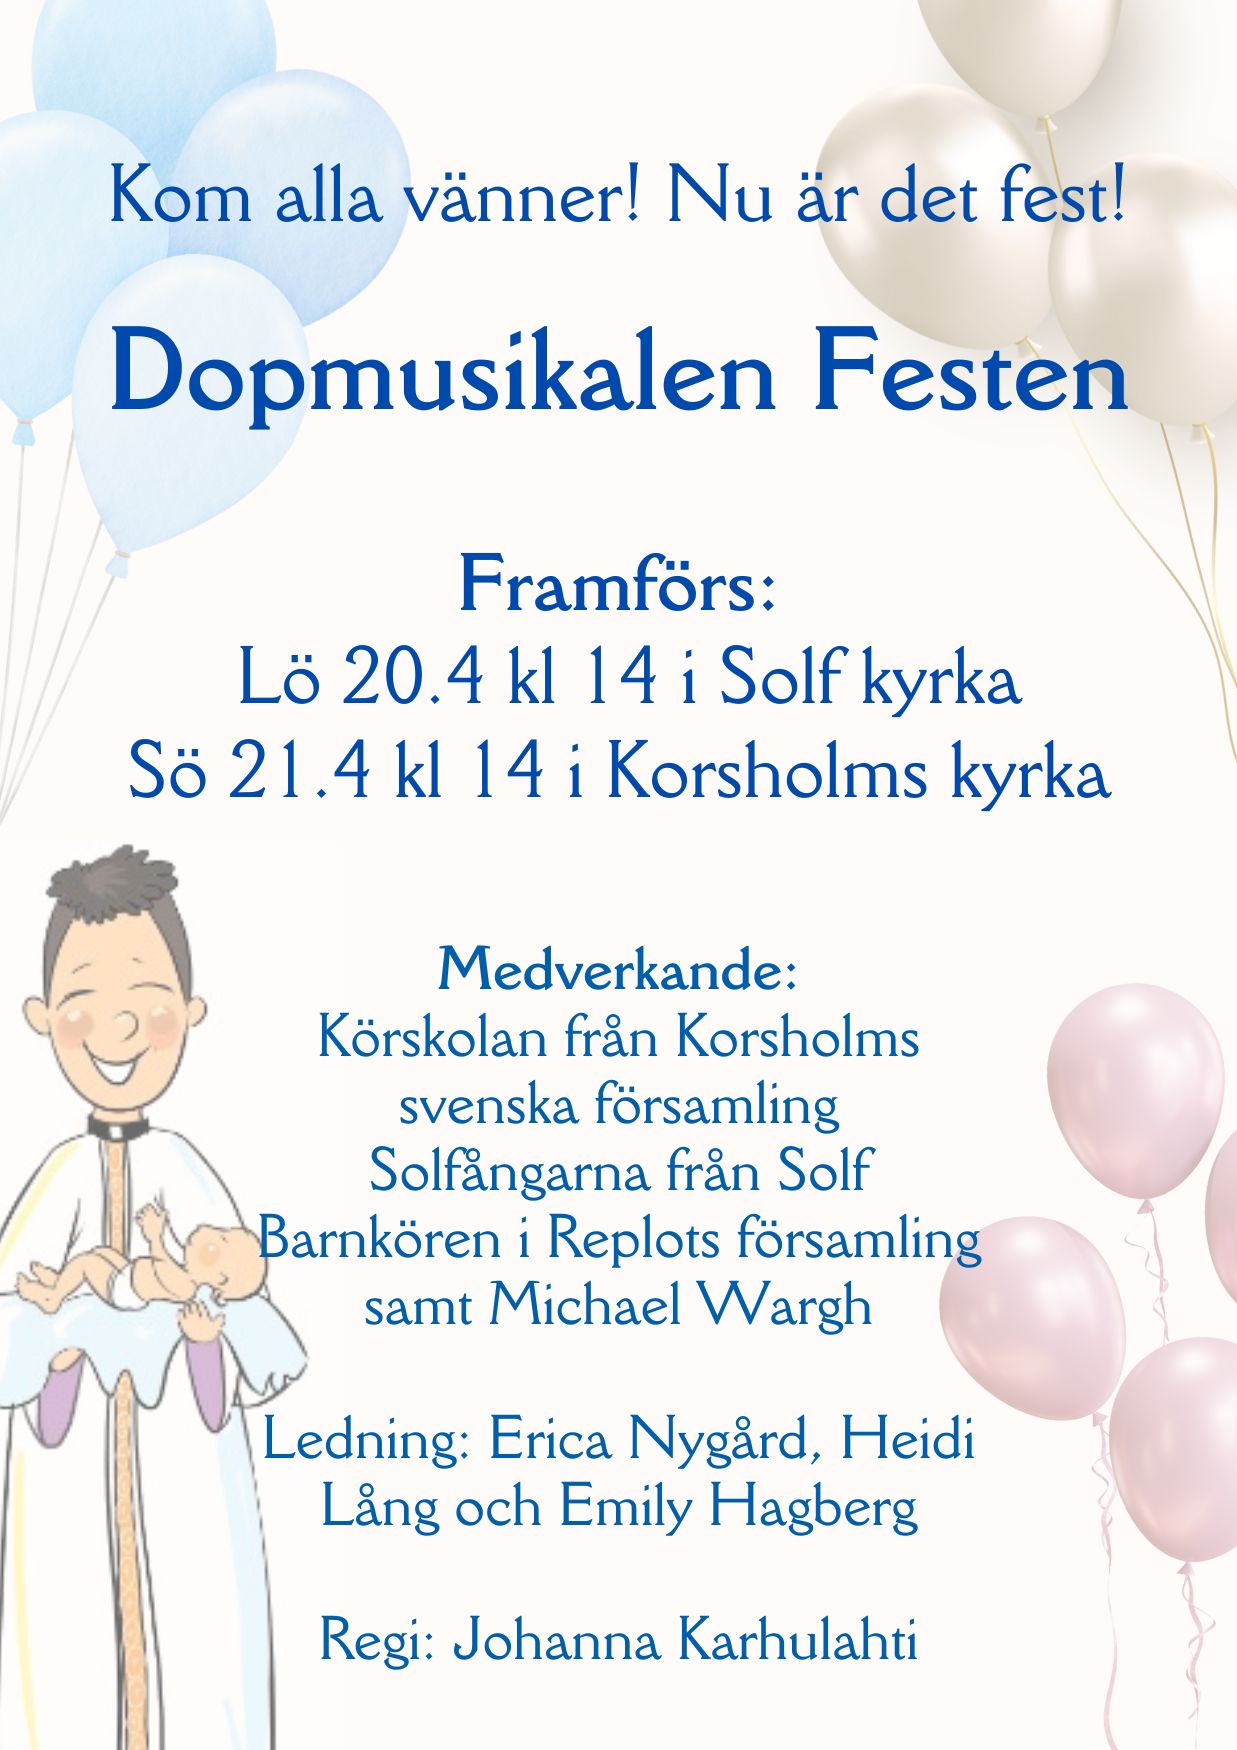 Dopmusikalen Festen framförs 20.4 kl 14 i Solf kyrka